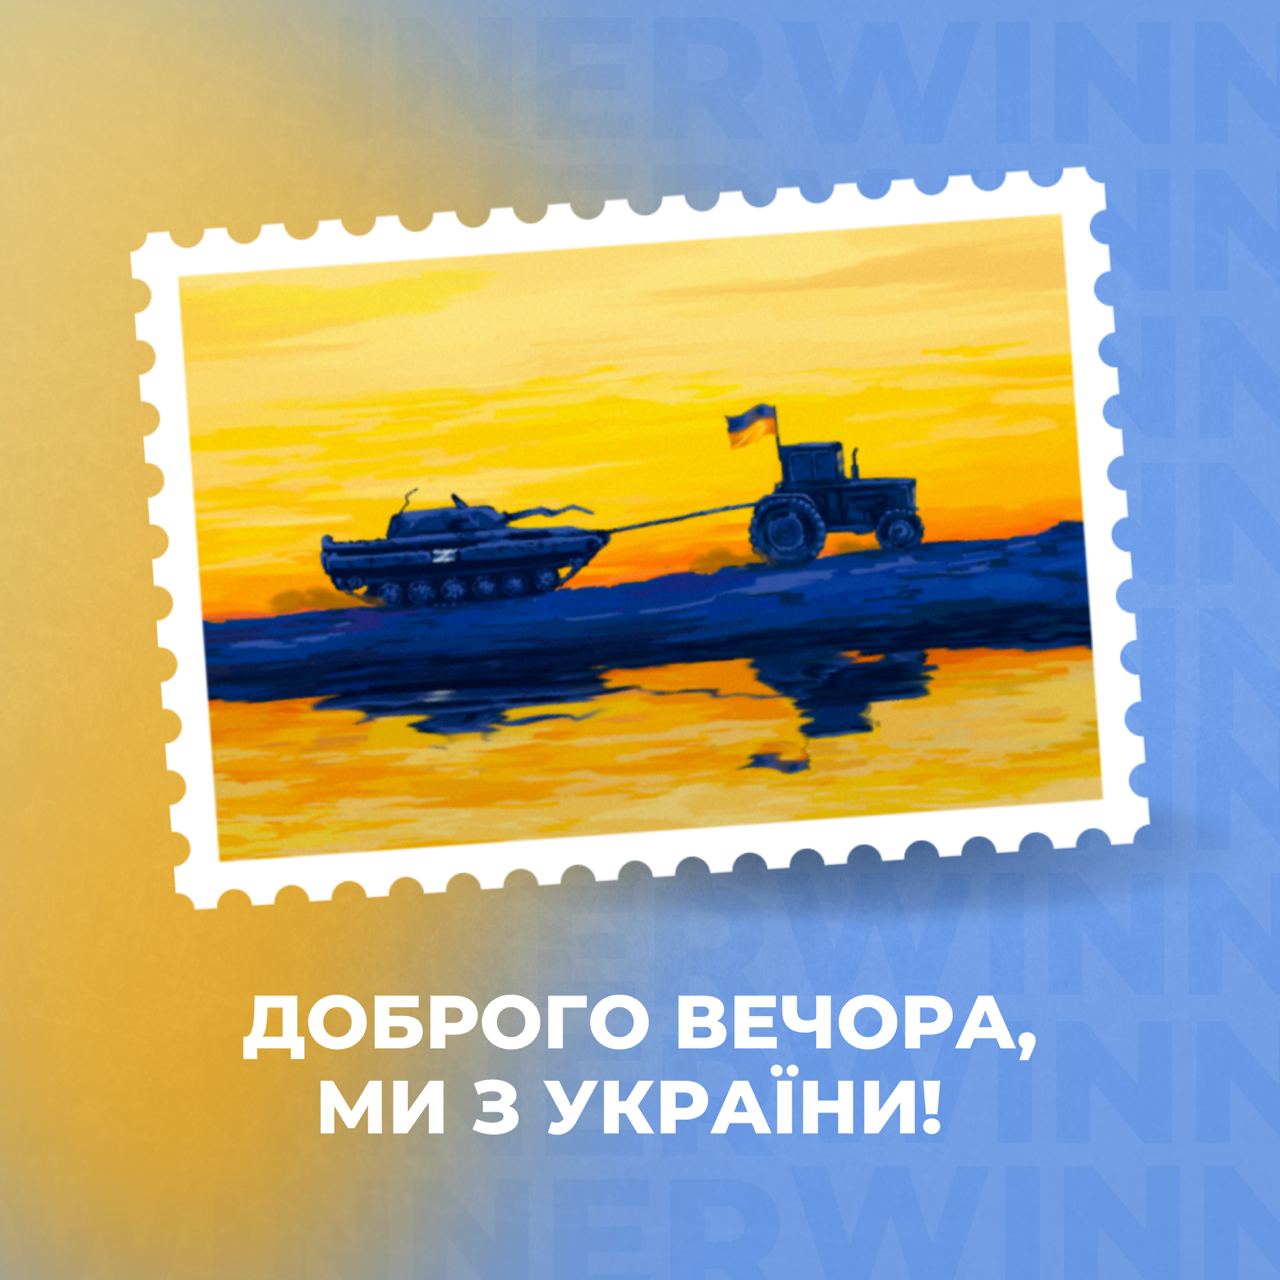 Нова поштова марка "Укрпошти"